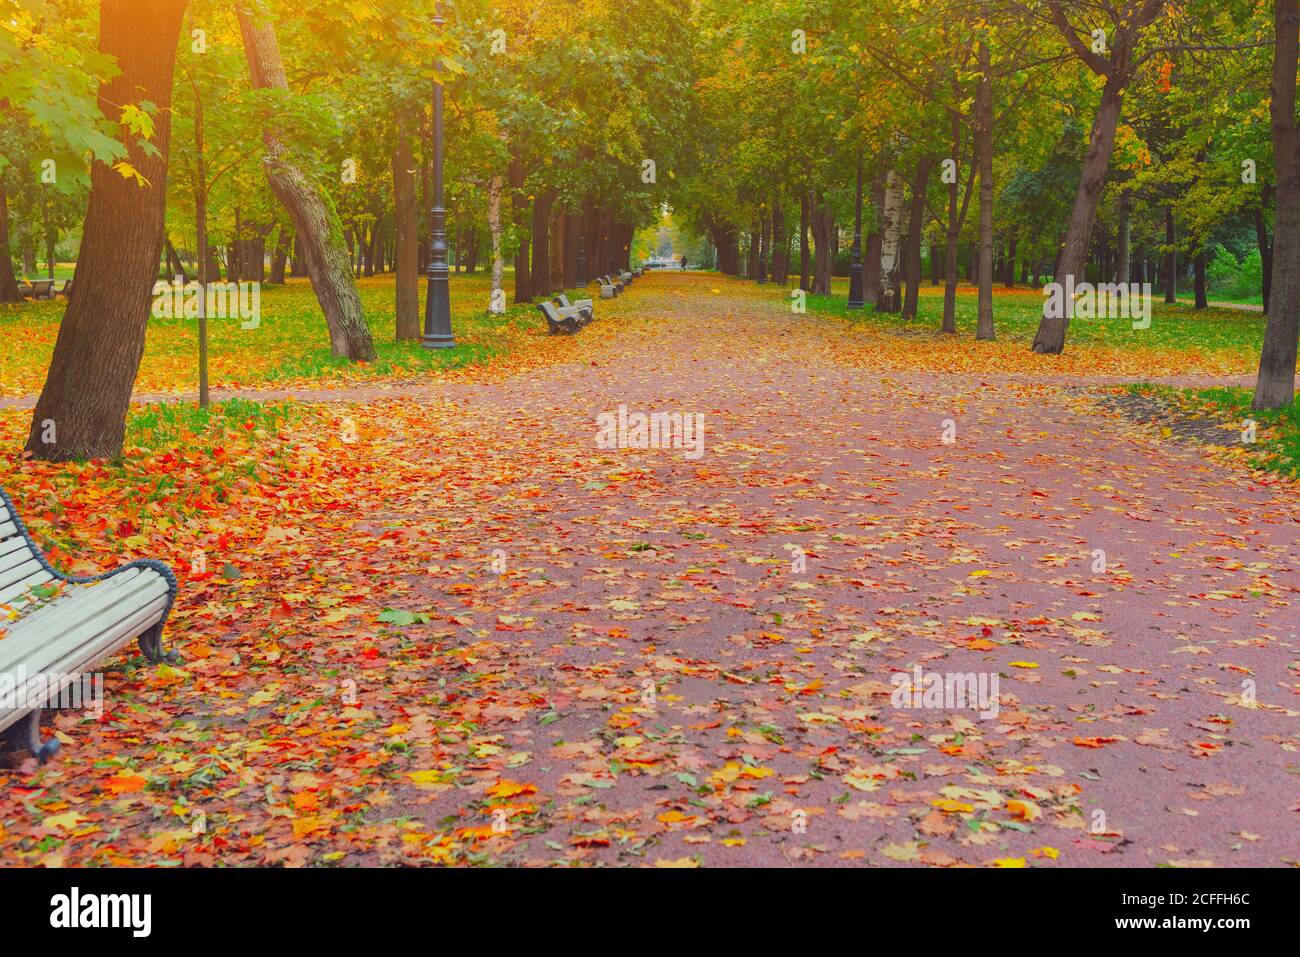 Autunnale parco vicolo strada nel paesaggio della città. Persone che camminano sul sentiero nel parco autunnale con foglie e alberi nel tempo di ottobre. Autunnale bellezza scena autunno. Foto Stock